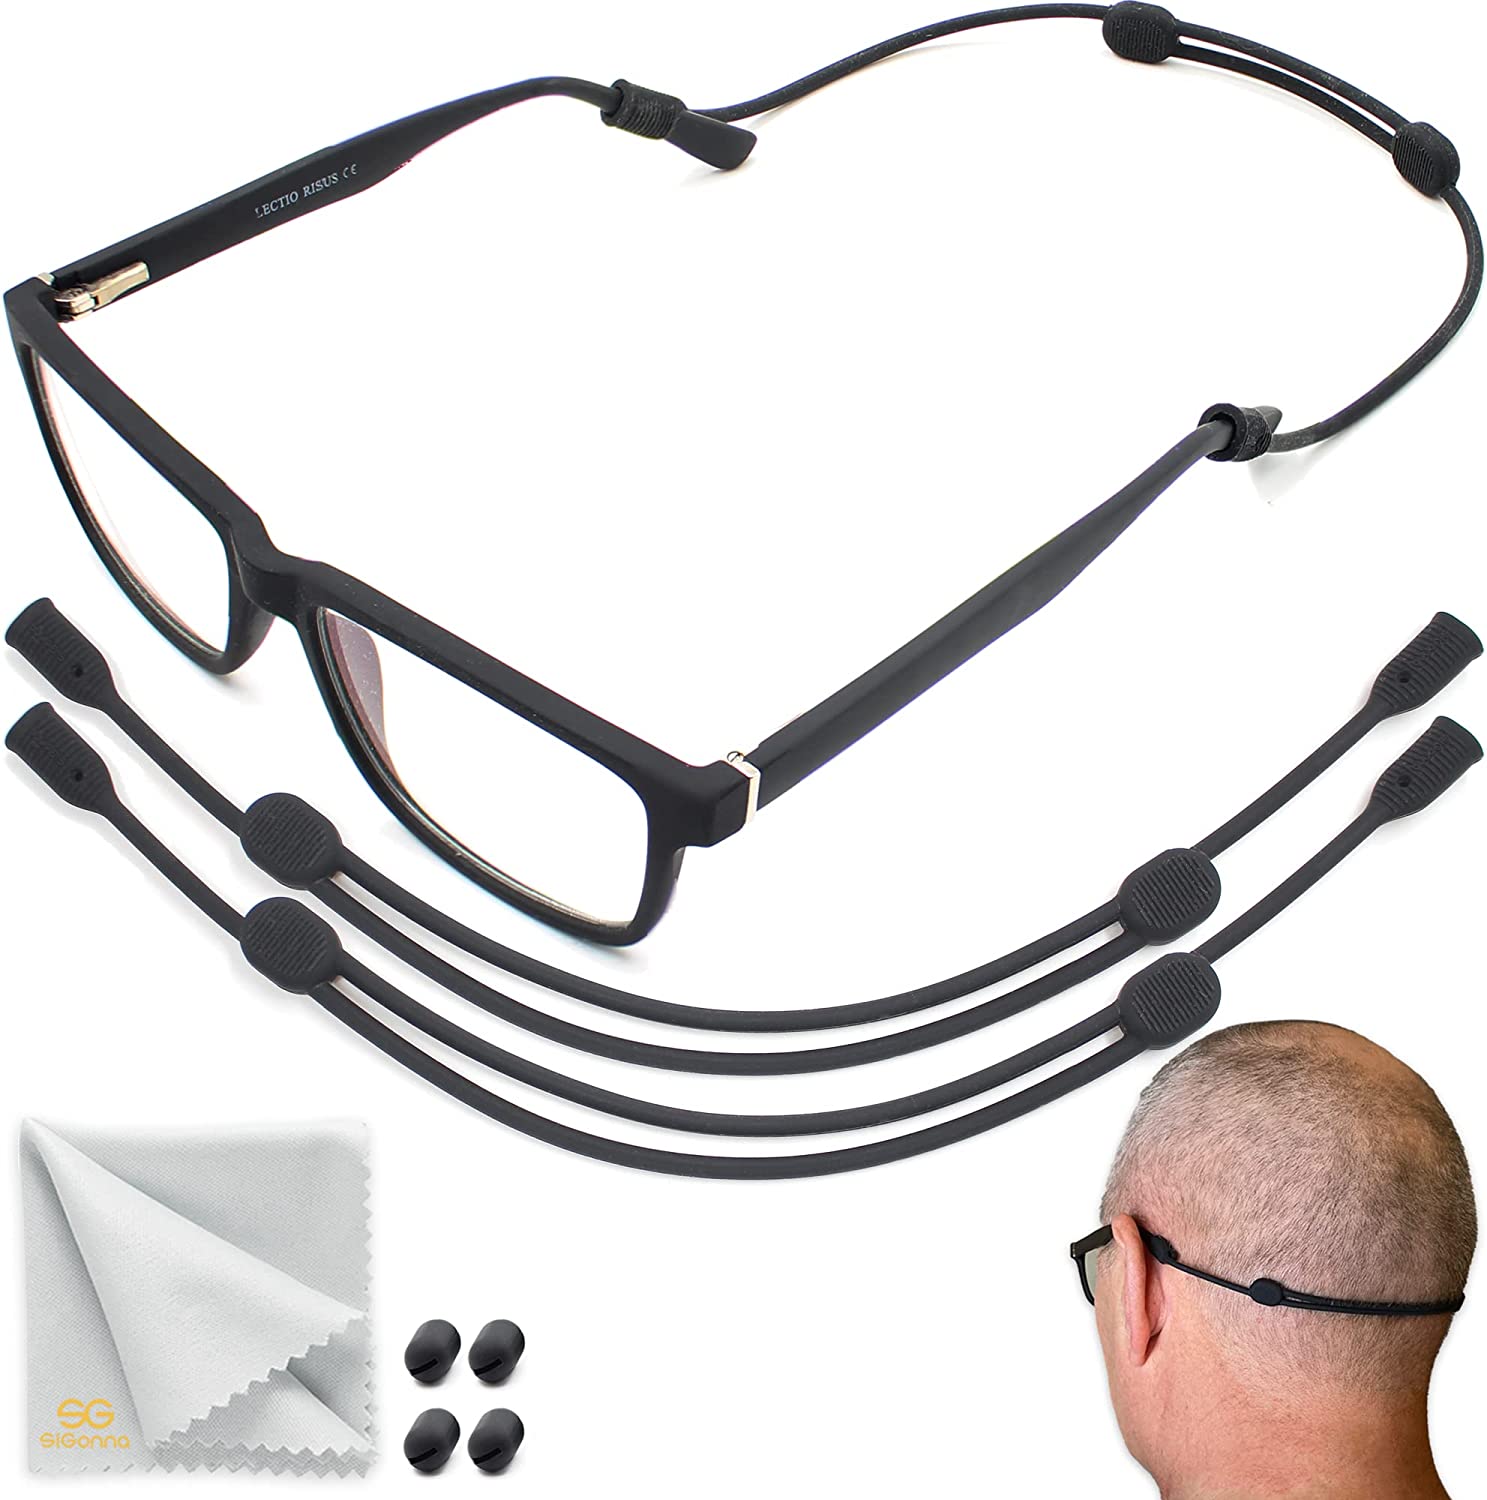 Sigonna glasses holder for eye glasses